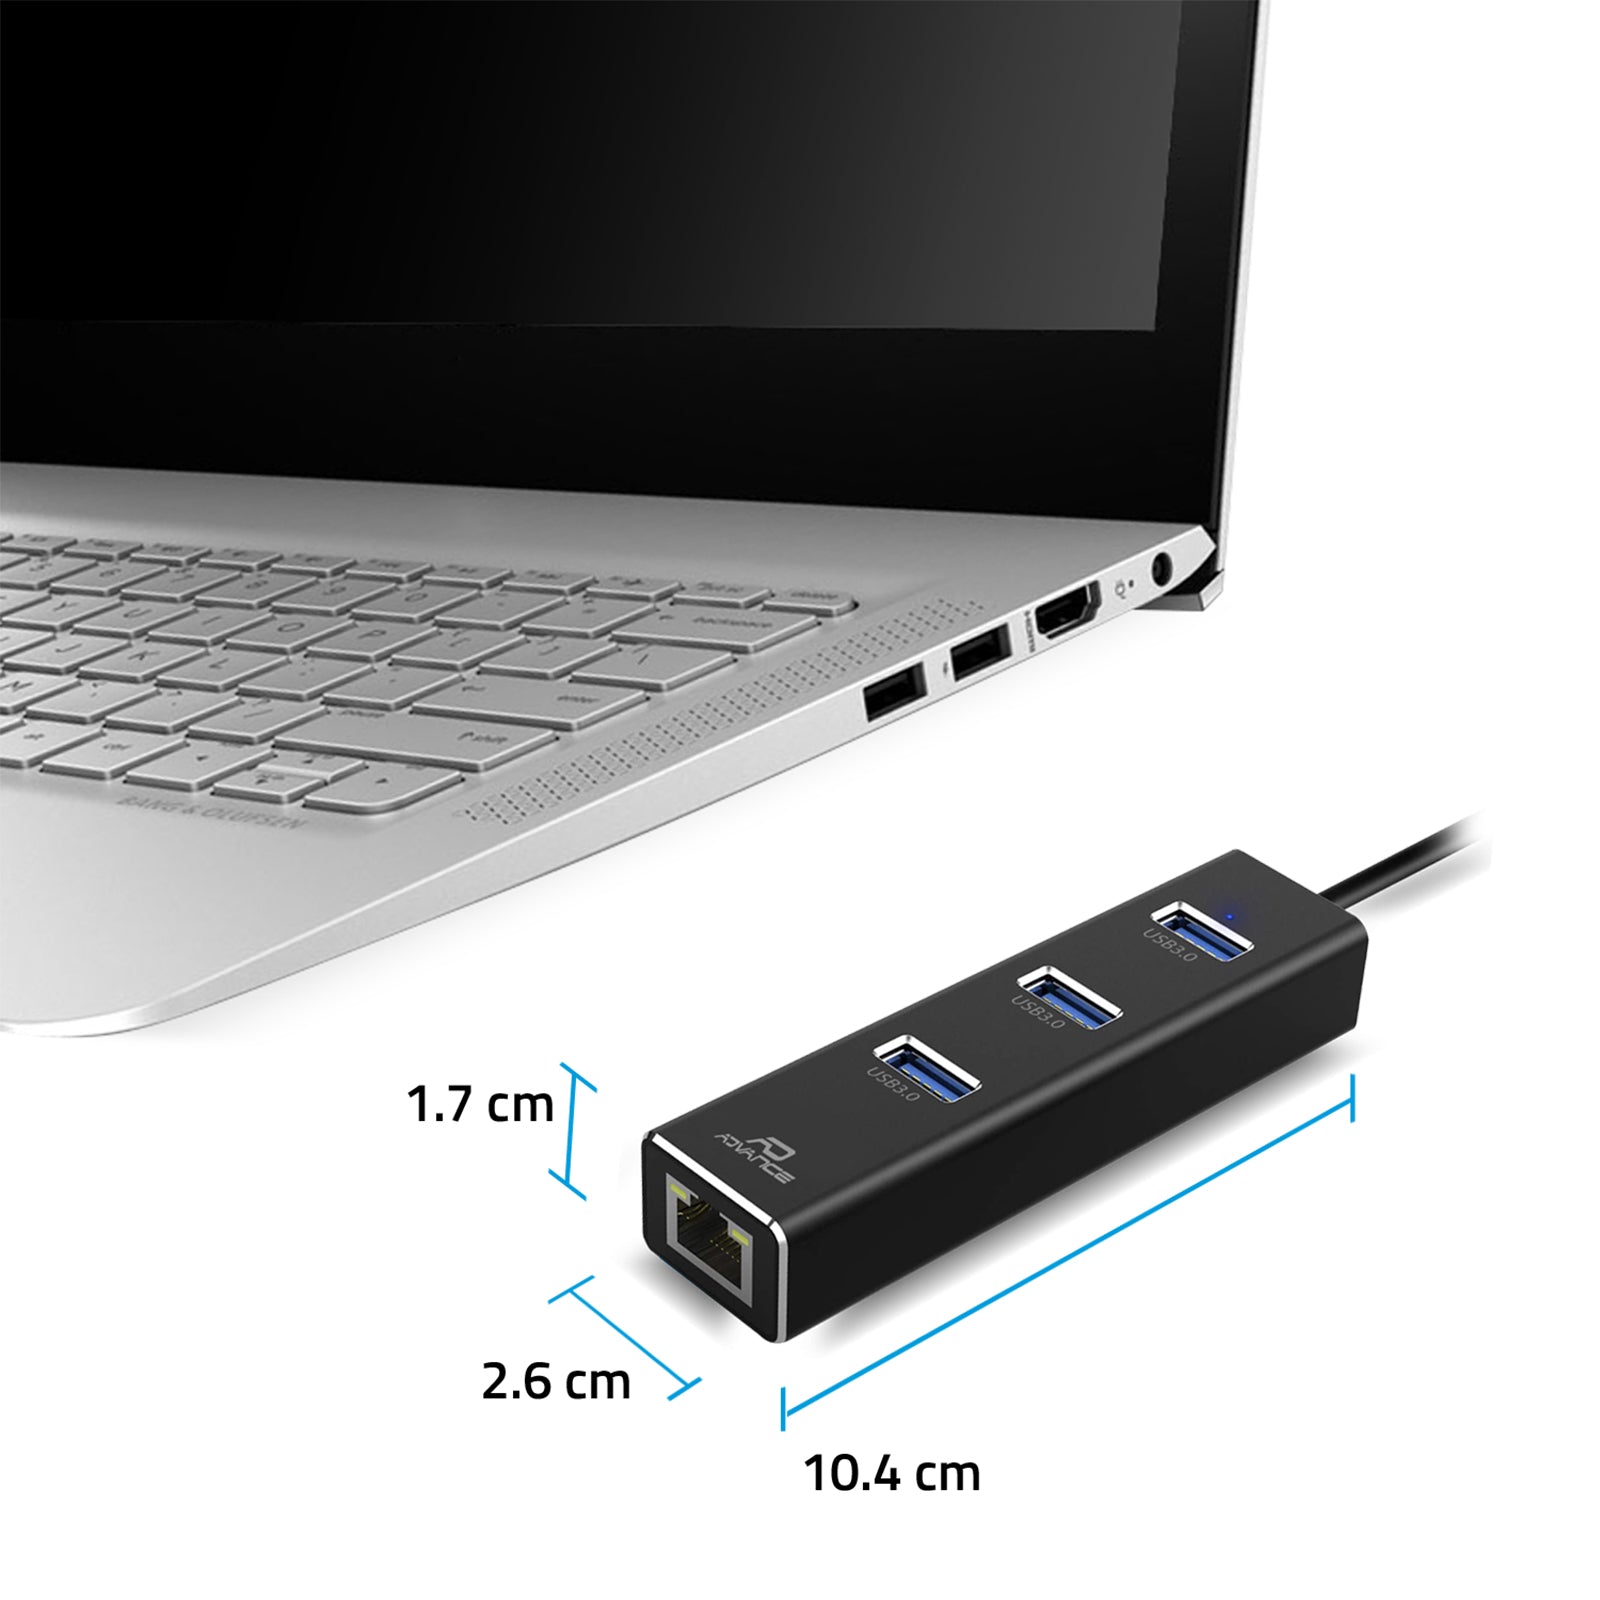 Advance - Adaptateur USB 3.0 Réseau Gigabit Ethernet RJ45 + 3 ports USB 3.0